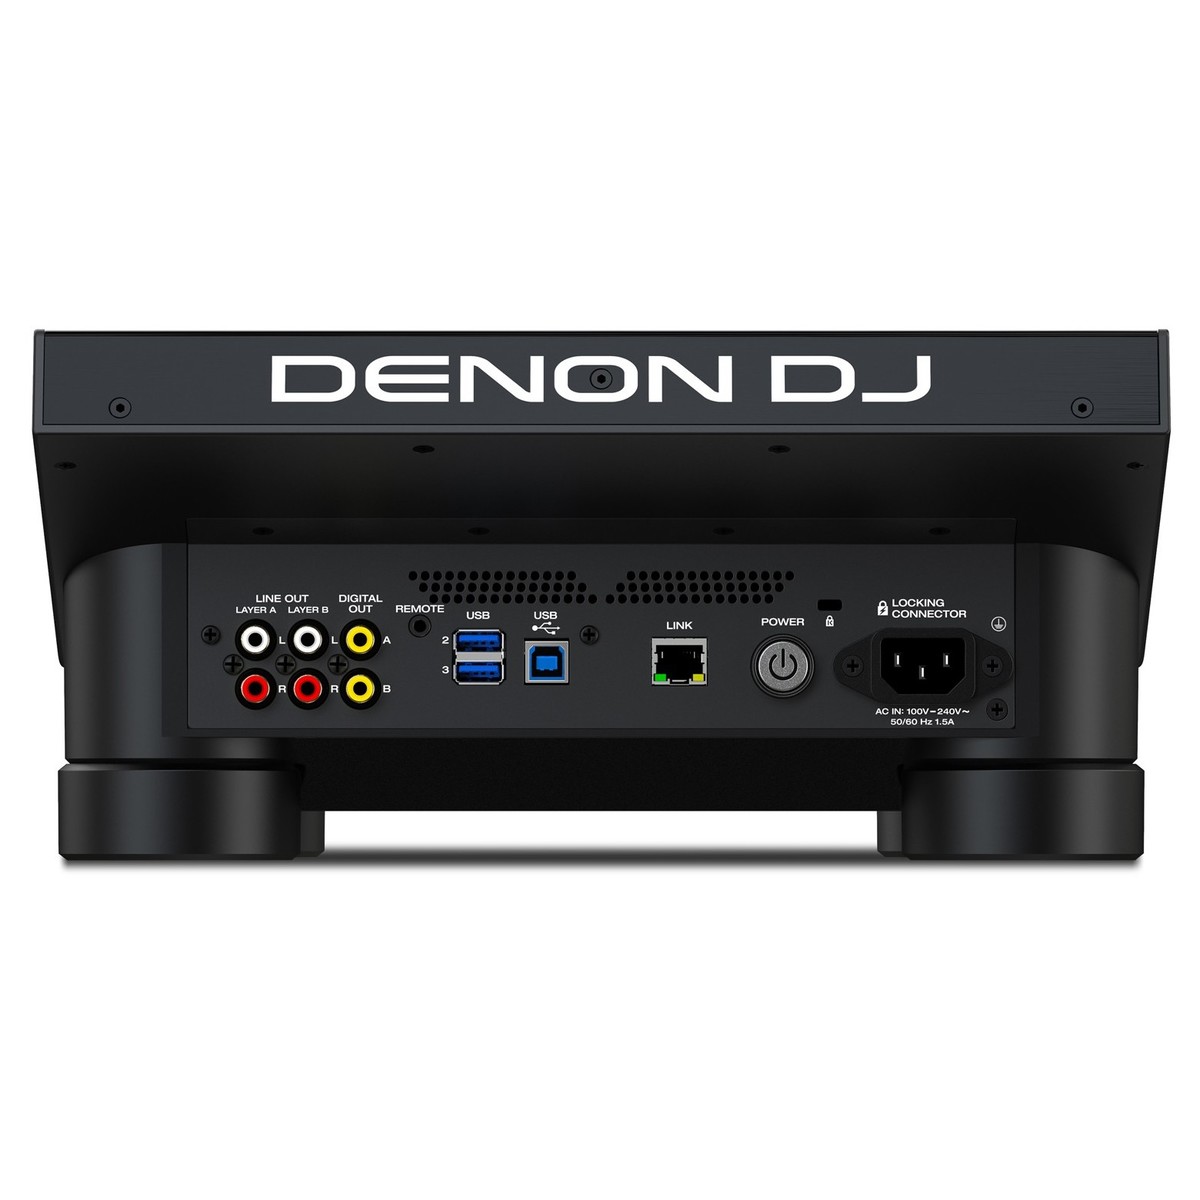 DENON DJ SC6000-PRIME LETTORE MEDIA PLAYER DUAL LAYER PER DJ USB SD STREAMING WI-FI CON DISPLAY HD 10.1 MULTI-TOUCH 1